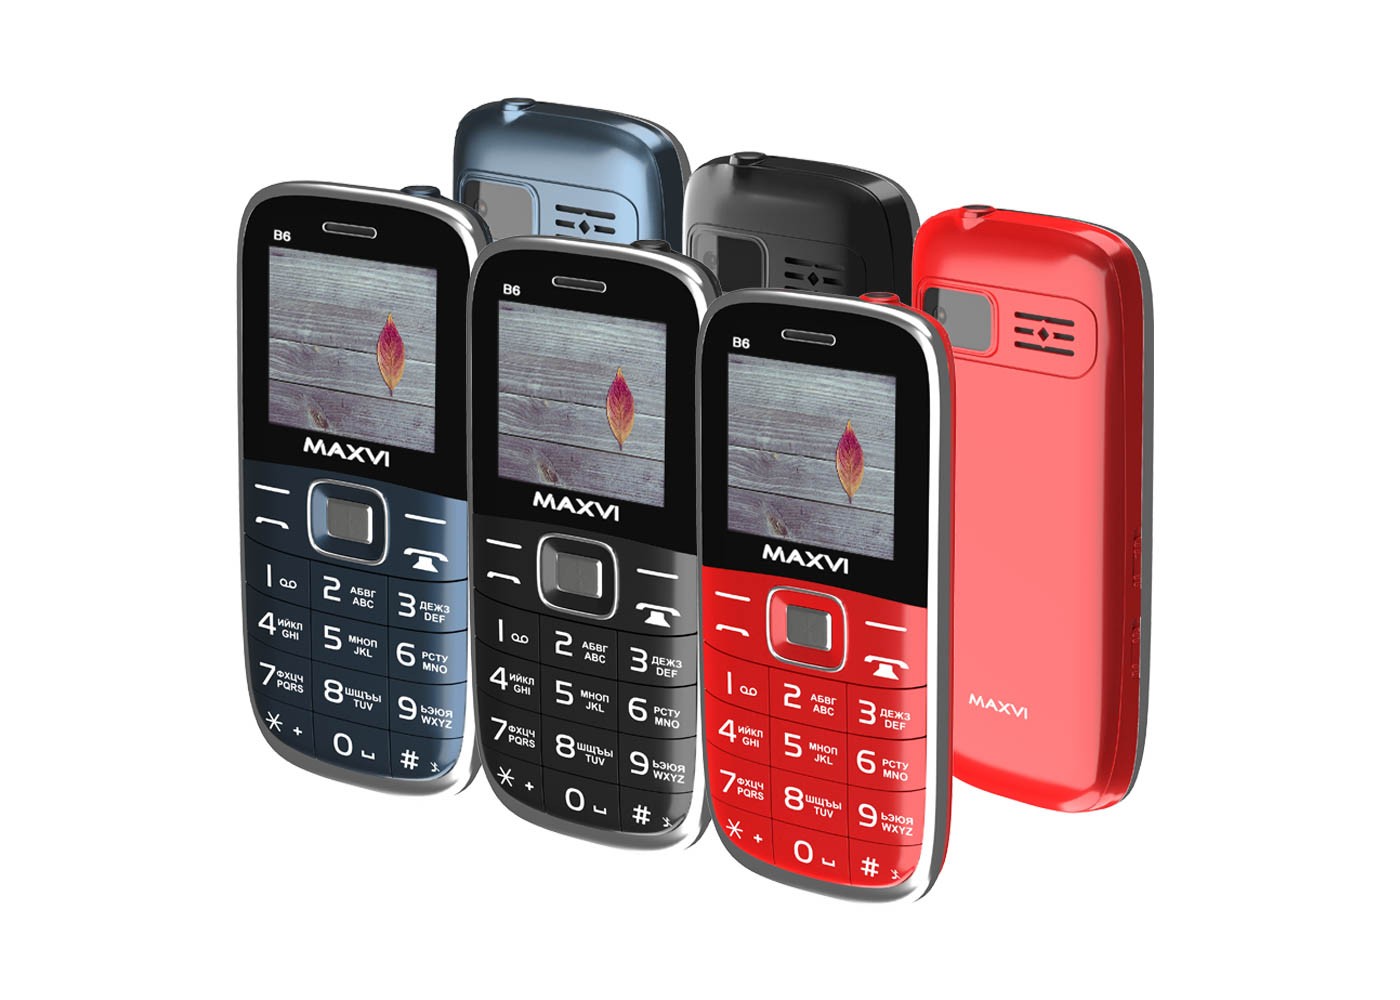 Интернет магазины сотовых телефонов питера. Сотовый телефон Maxvi b6 Red. Сотовый телефон Maxvi b6 Black. Сотовый телефон Maxvi b6 красный. Мобильный телефон Maxvi b6 Marengo.